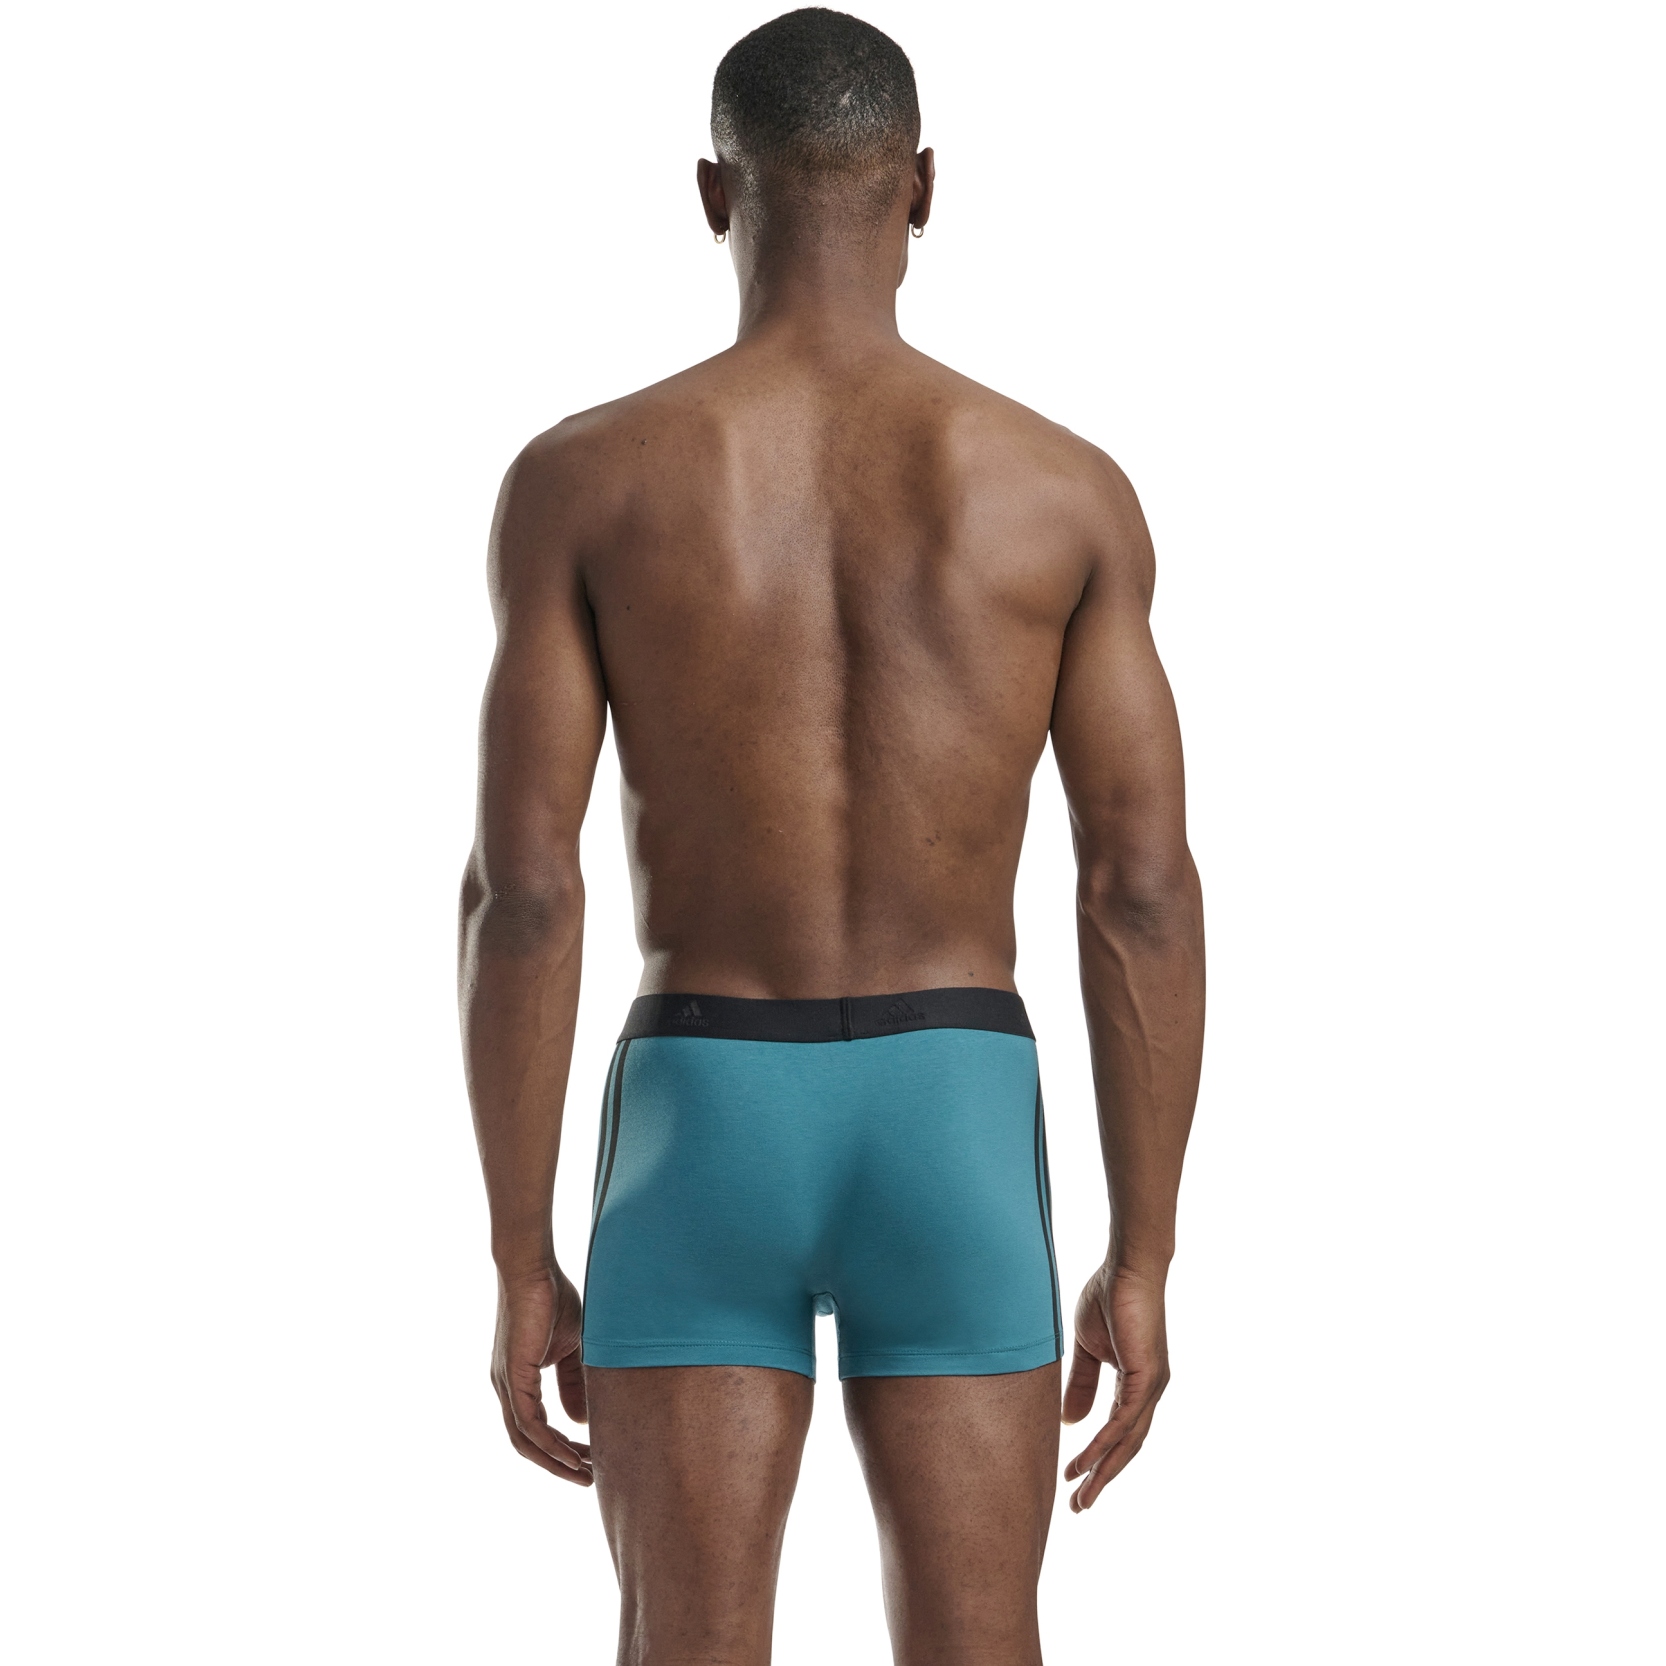 adidas Sports Underwear Active Flex Cotton 3 Trunk Men - 3 Pack - 959 -  assorted